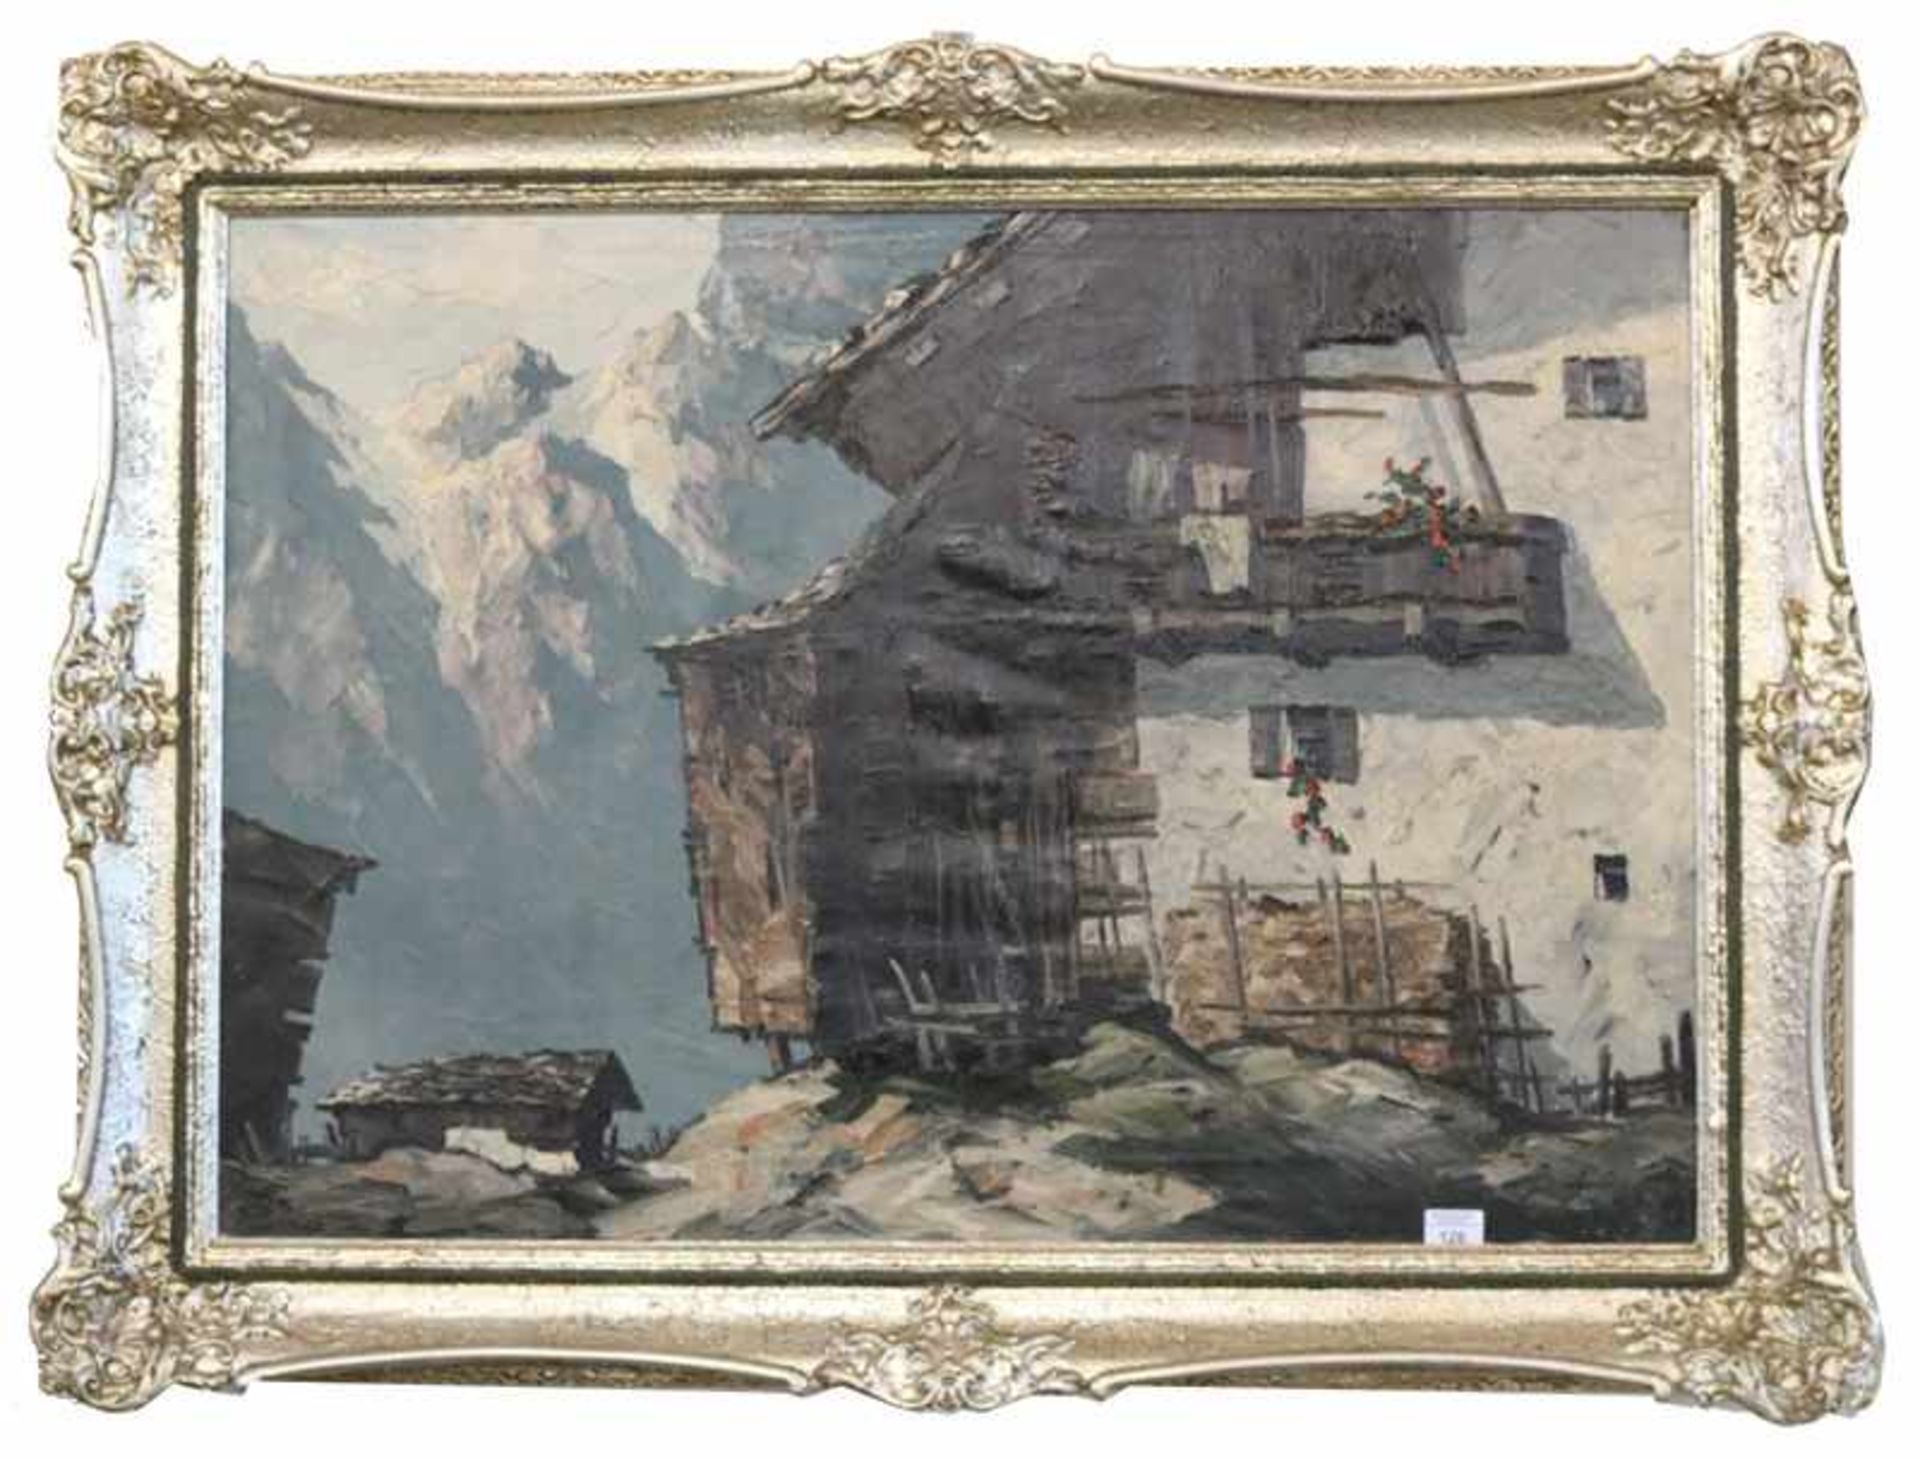 Gemälde ÖL/LW 'Bergbauernhof im Hochgebirge', signiert Hösch, Hans, * 1855 + 1902, studierte in